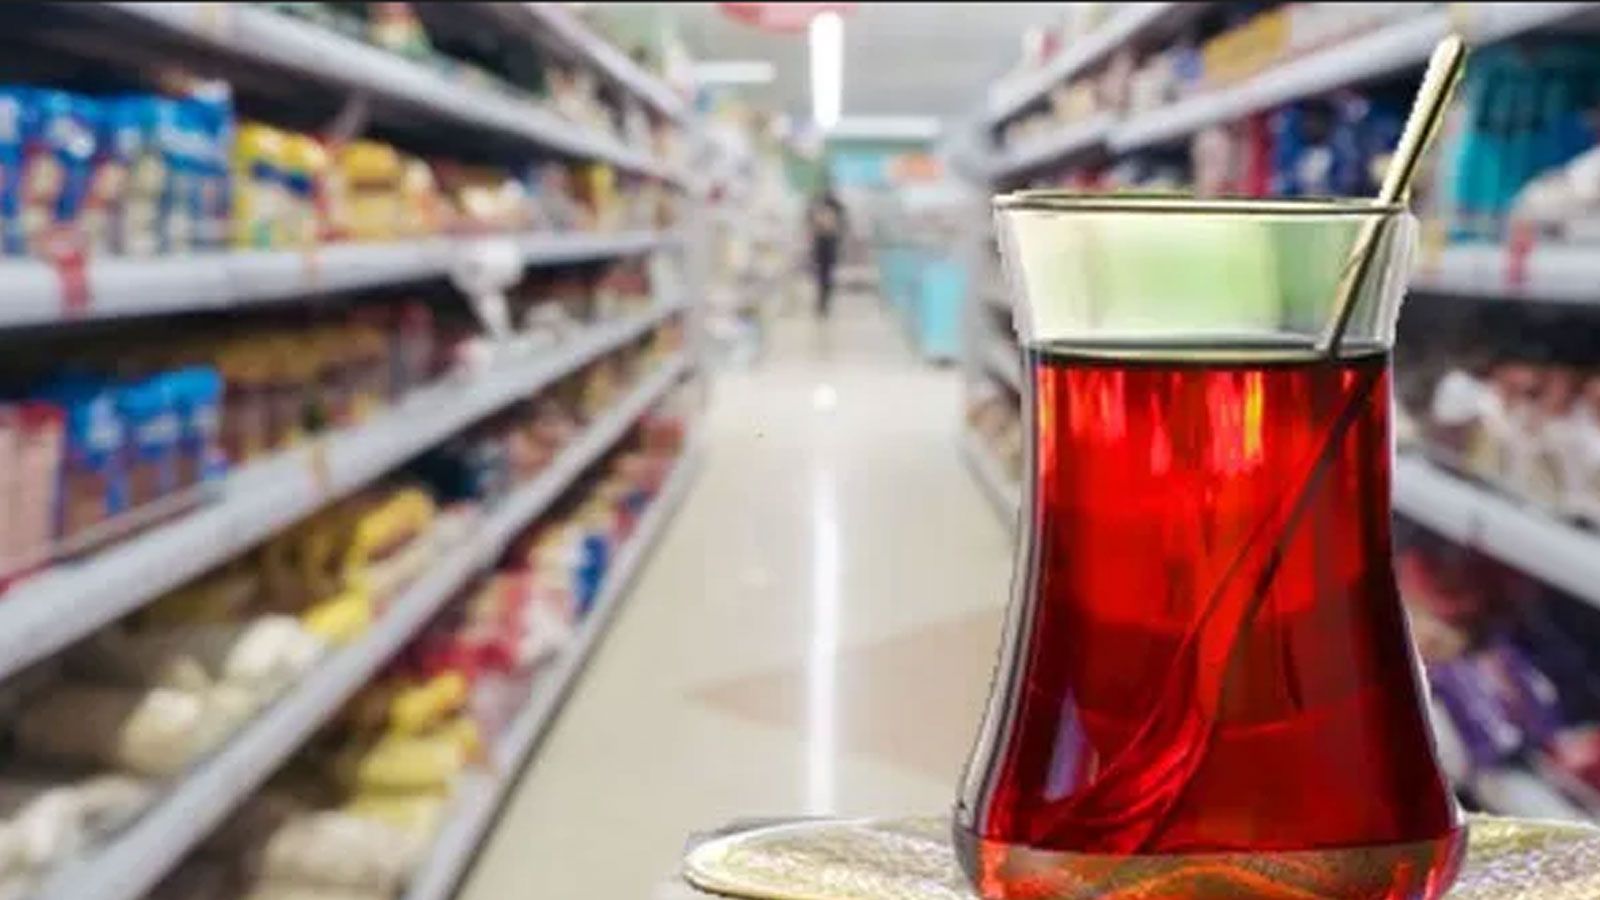 2024 yılında en ucuz çay A101 markette satılan Karadem marka harman çayıdır. Bu çayın kilogram fiyatı 84,50'dir.